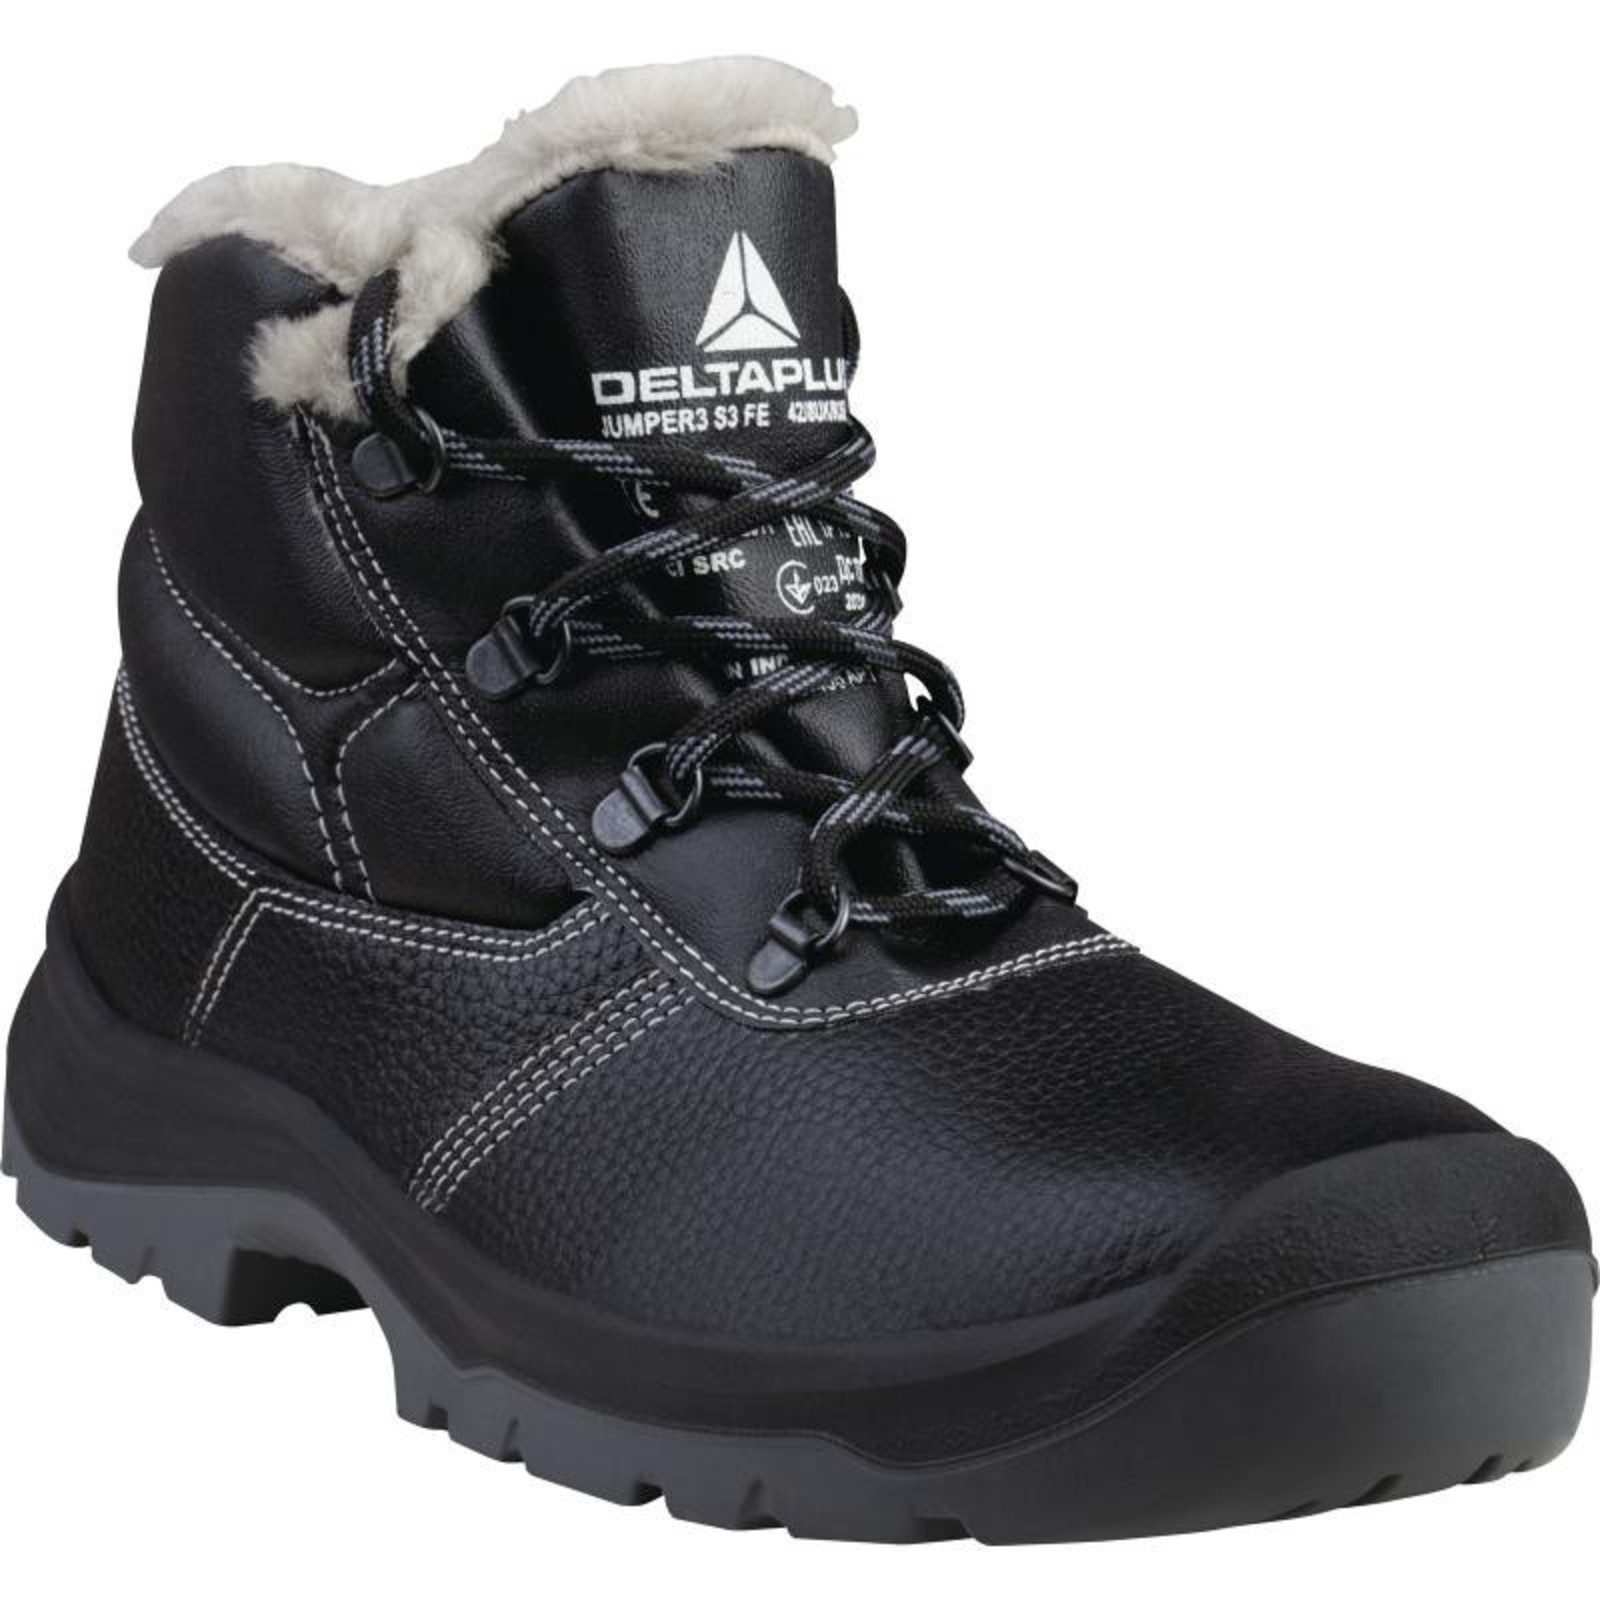 Zimná členková bezpečnostná obuv Delta Plus Jumper3 S3 - veľkosť: 46, farba: čierna